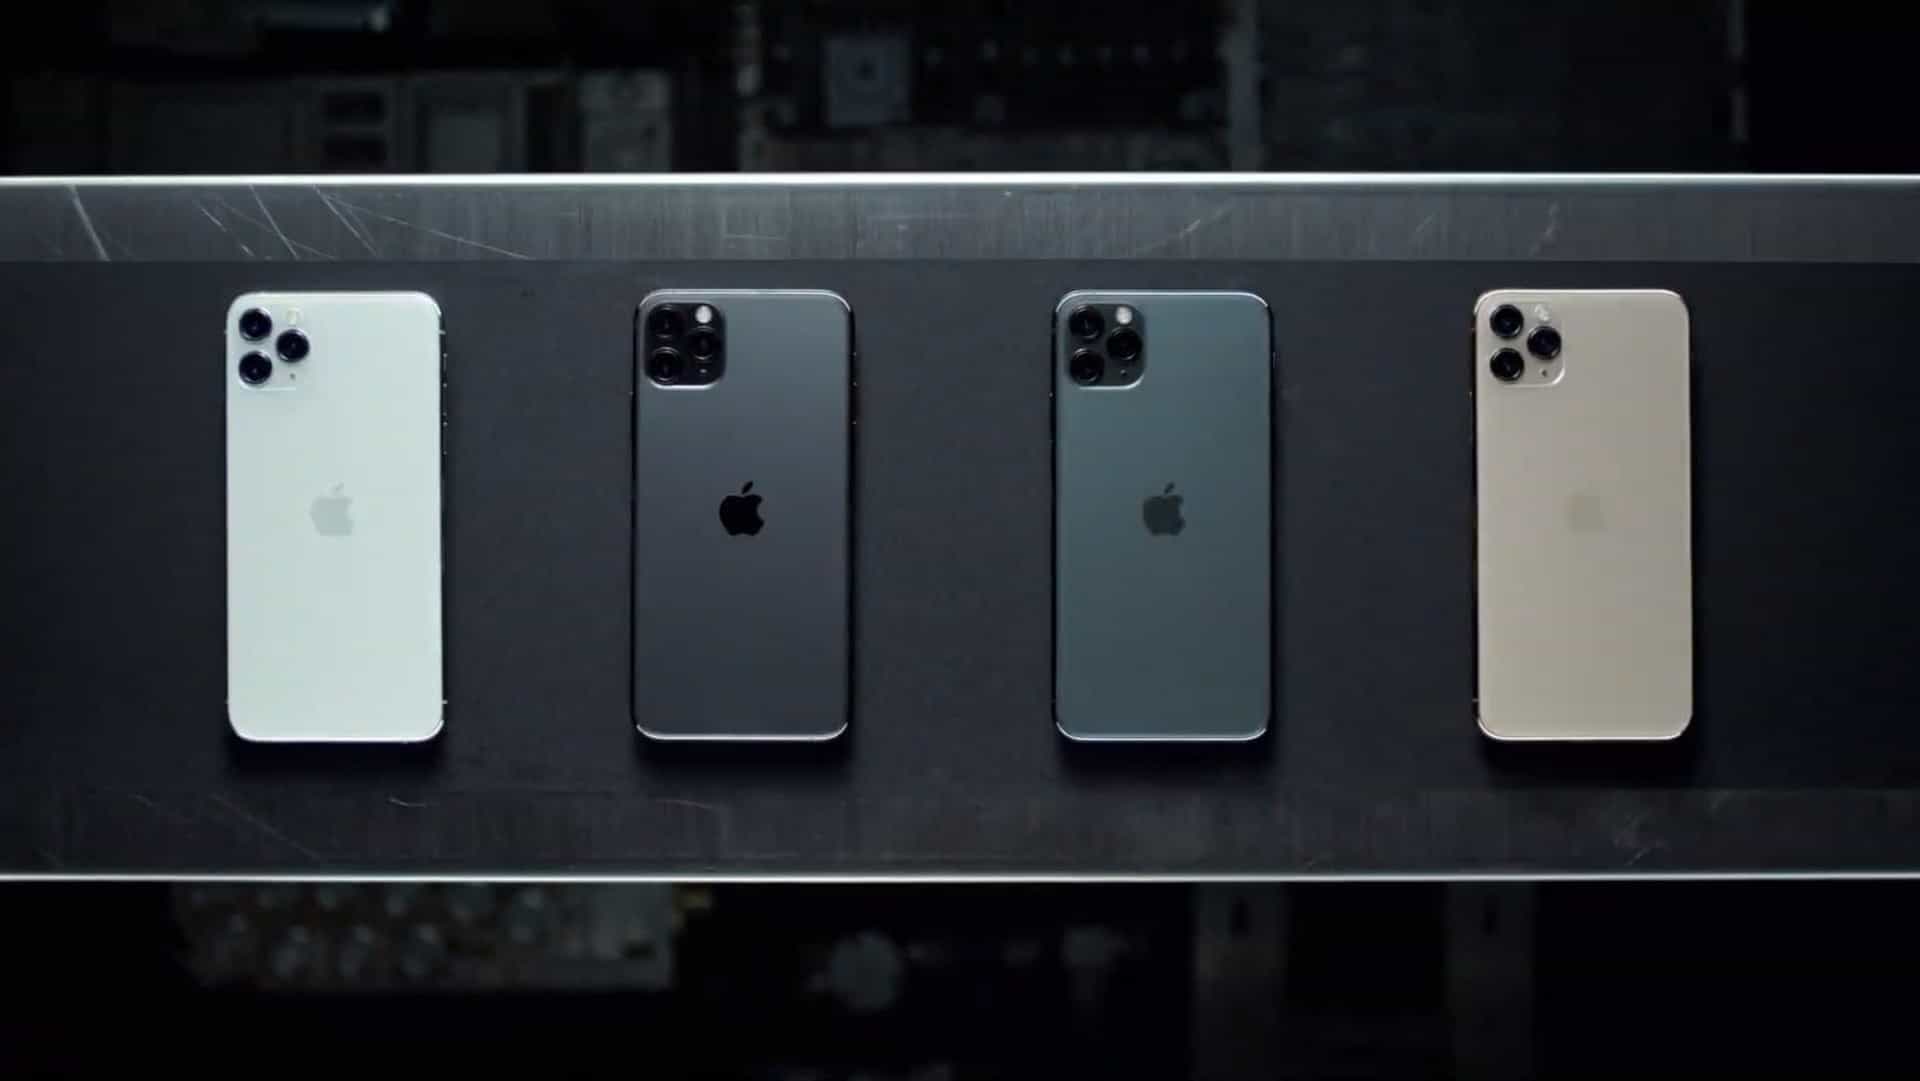 Thế iPhone 12 được ra
mắt vào năm tới sẽ có đến 6 phiên bản thay vì 3 phiên bản
như trên iPhone 11, bao gồm phiên bản 5G, Plus và Max?